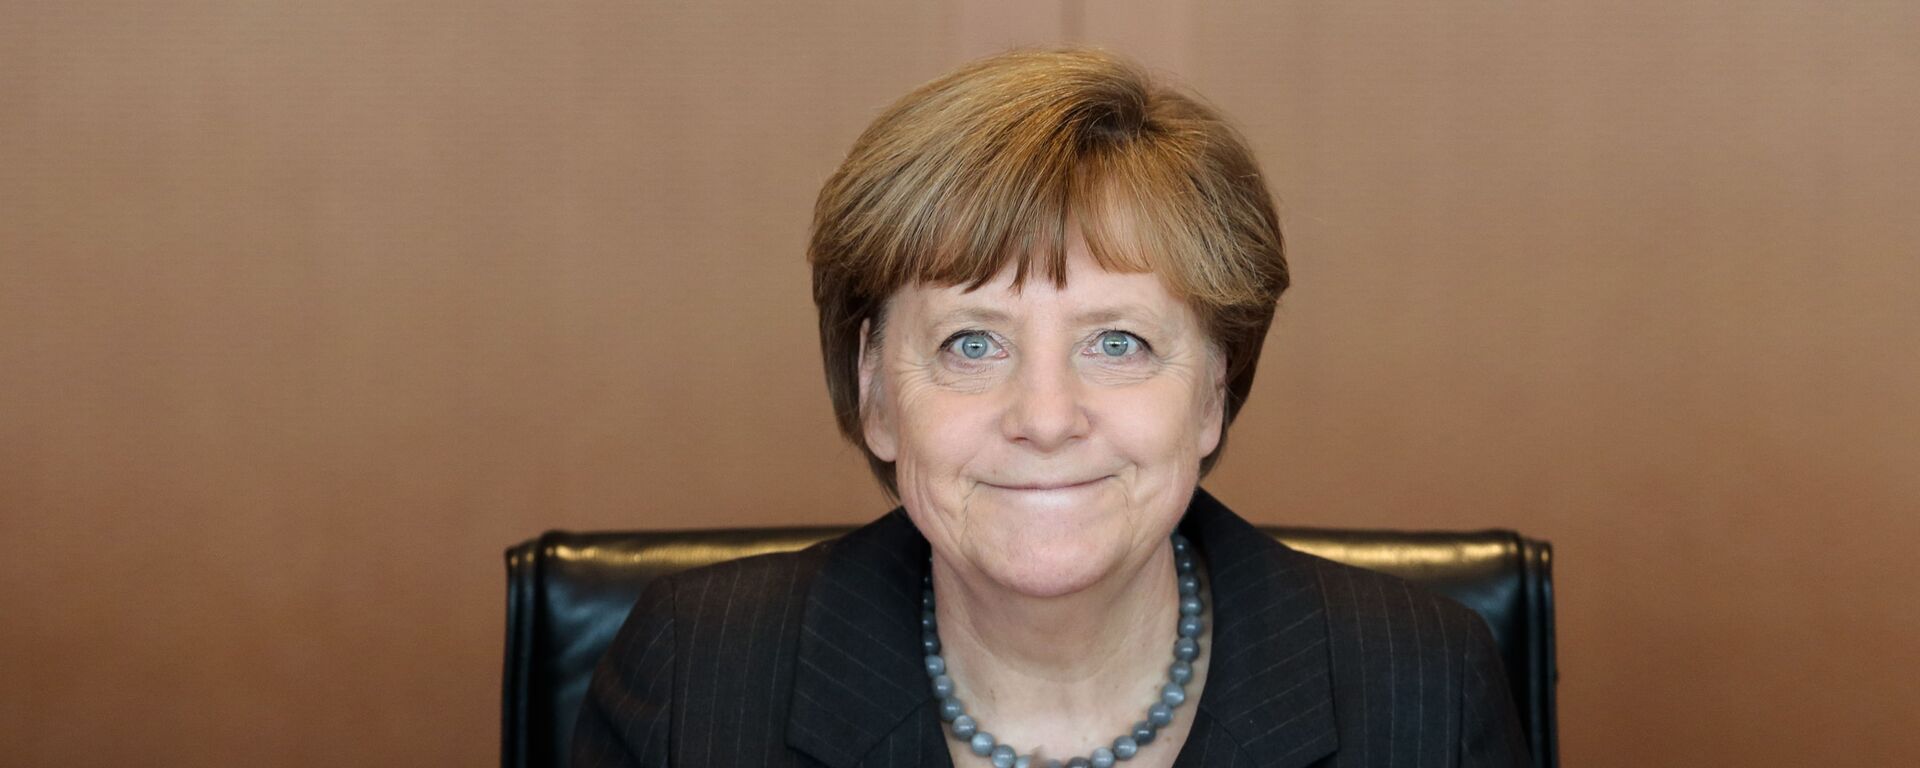 Thủ tướng Đức Angela Merkel tiến hành cuộc họp hàng tuần của nội các Bộ trưởng Chính phủ tại Berlin - Sputnik Việt Nam, 1920, 29.09.2021